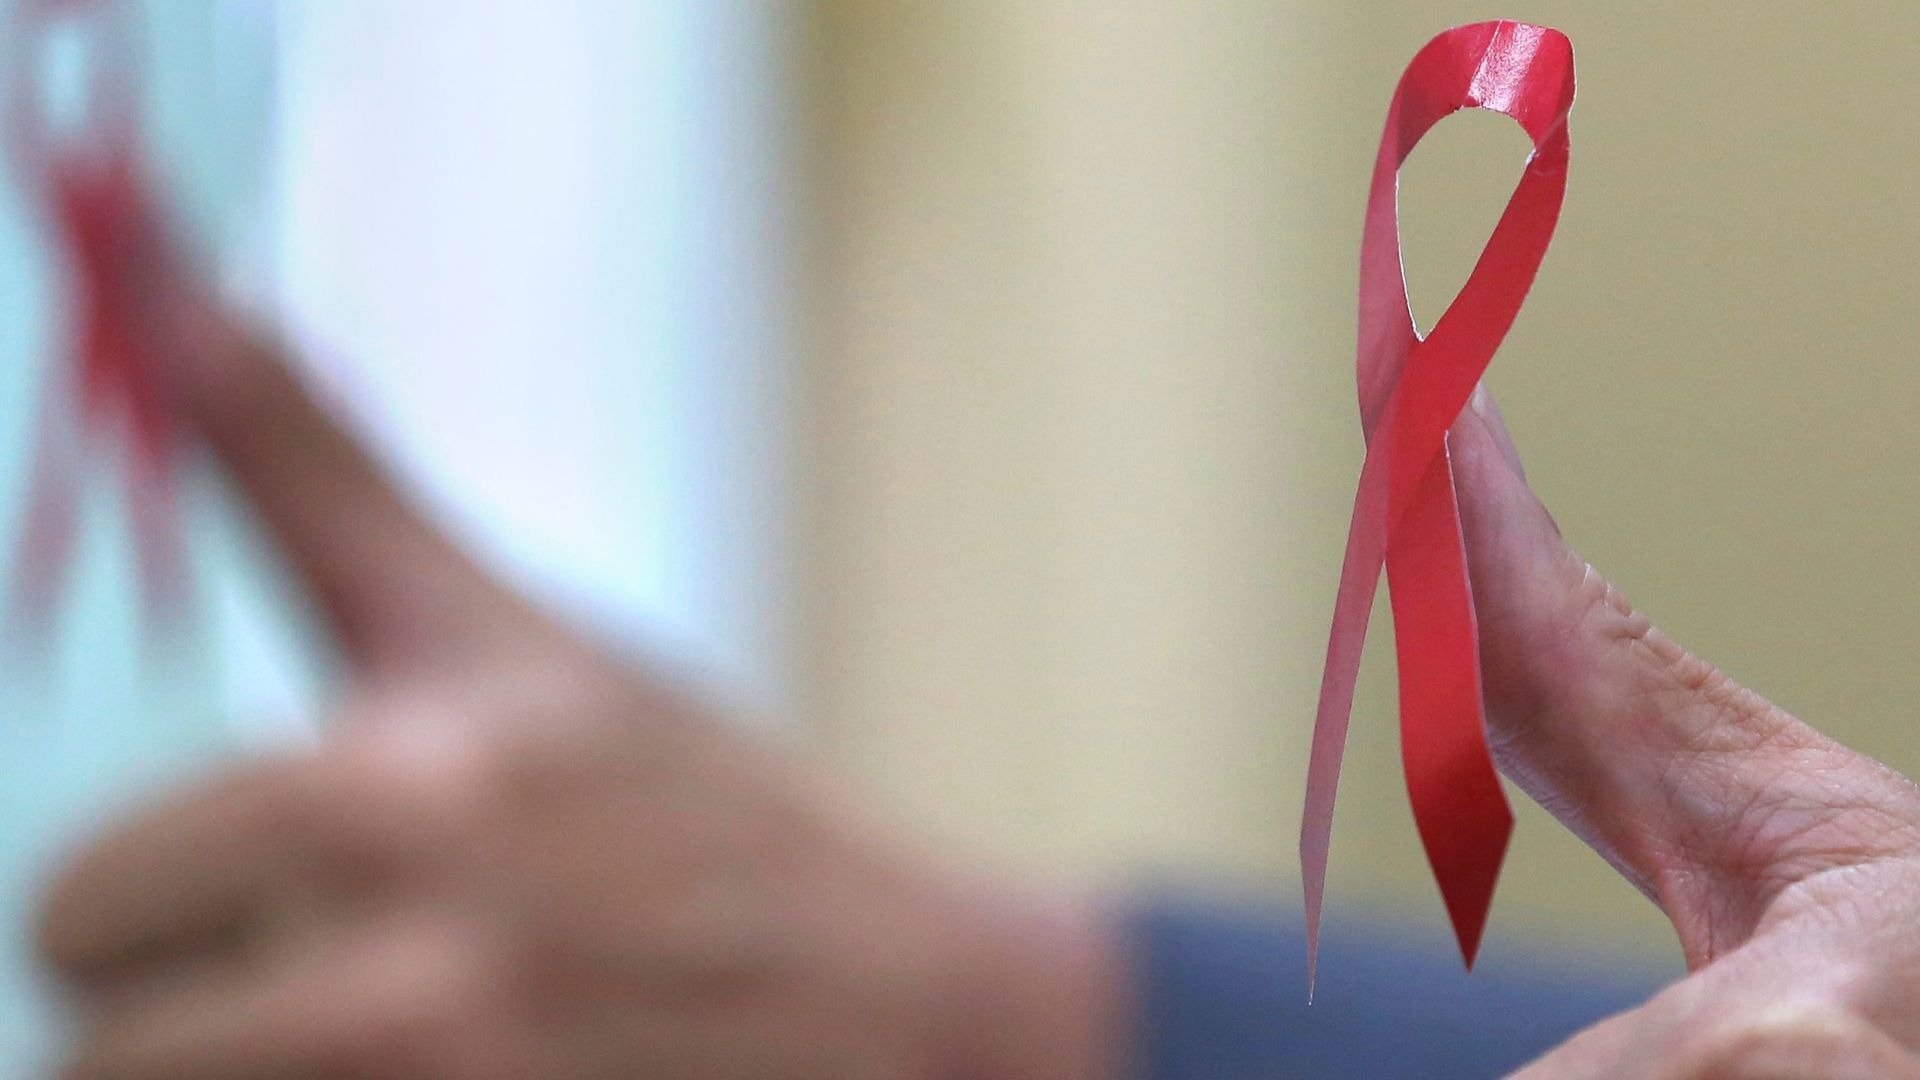 La prueba del sida se podrá comprar en farmacias españolas sin receta médica